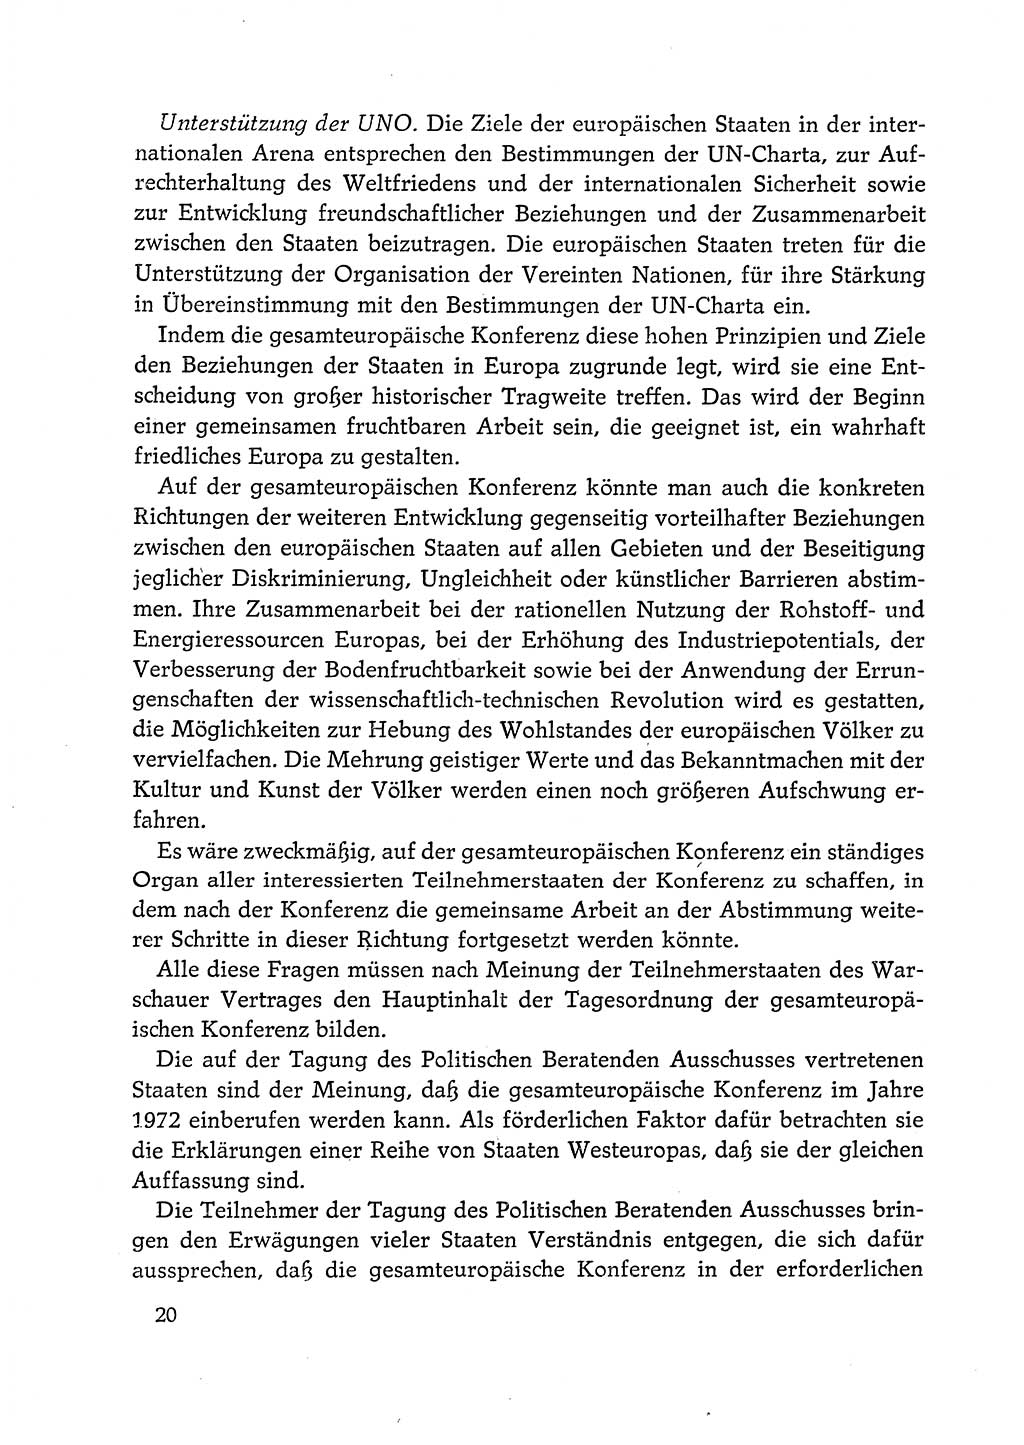 Dokumente der Sozialistischen Einheitspartei Deutschlands (SED) [Deutsche Demokratische Republik (DDR)] 1972-1973, Seite 20 (Dok. SED DDR 1972-1973, S. 20)